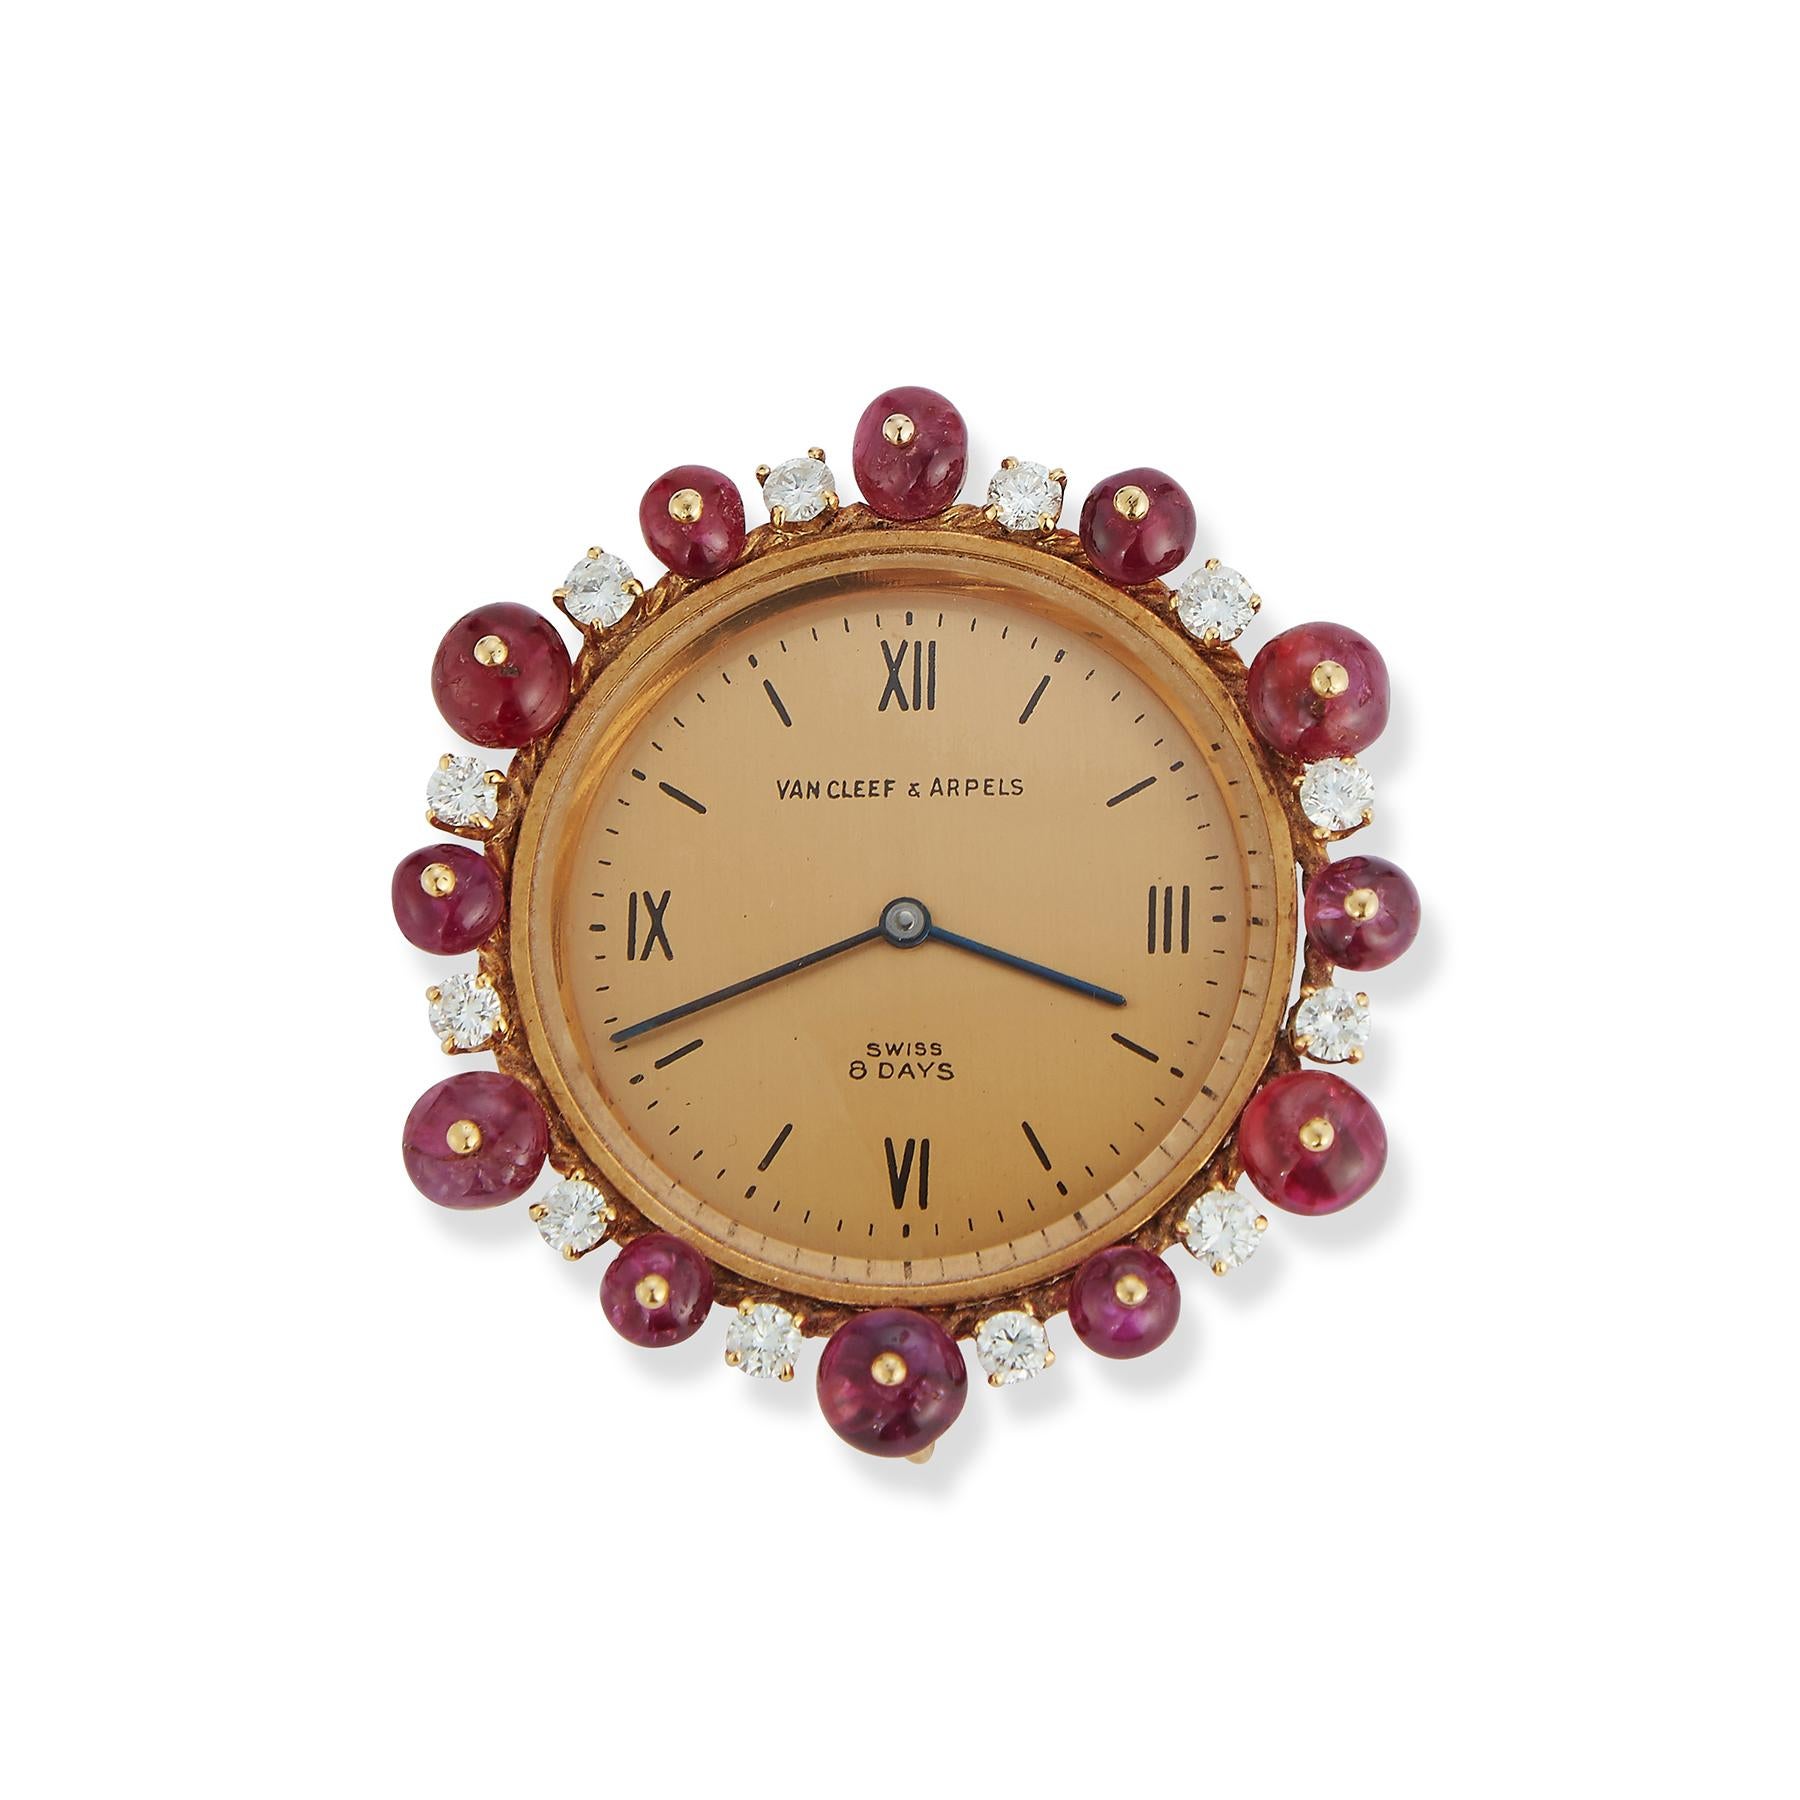 Van Cleef & Arpels Pendentif montre rubis

L'horloge est entourée de 12 rubis cabochons et de diamants.

Dimensions : environ 1,5 x 1,5 pouces